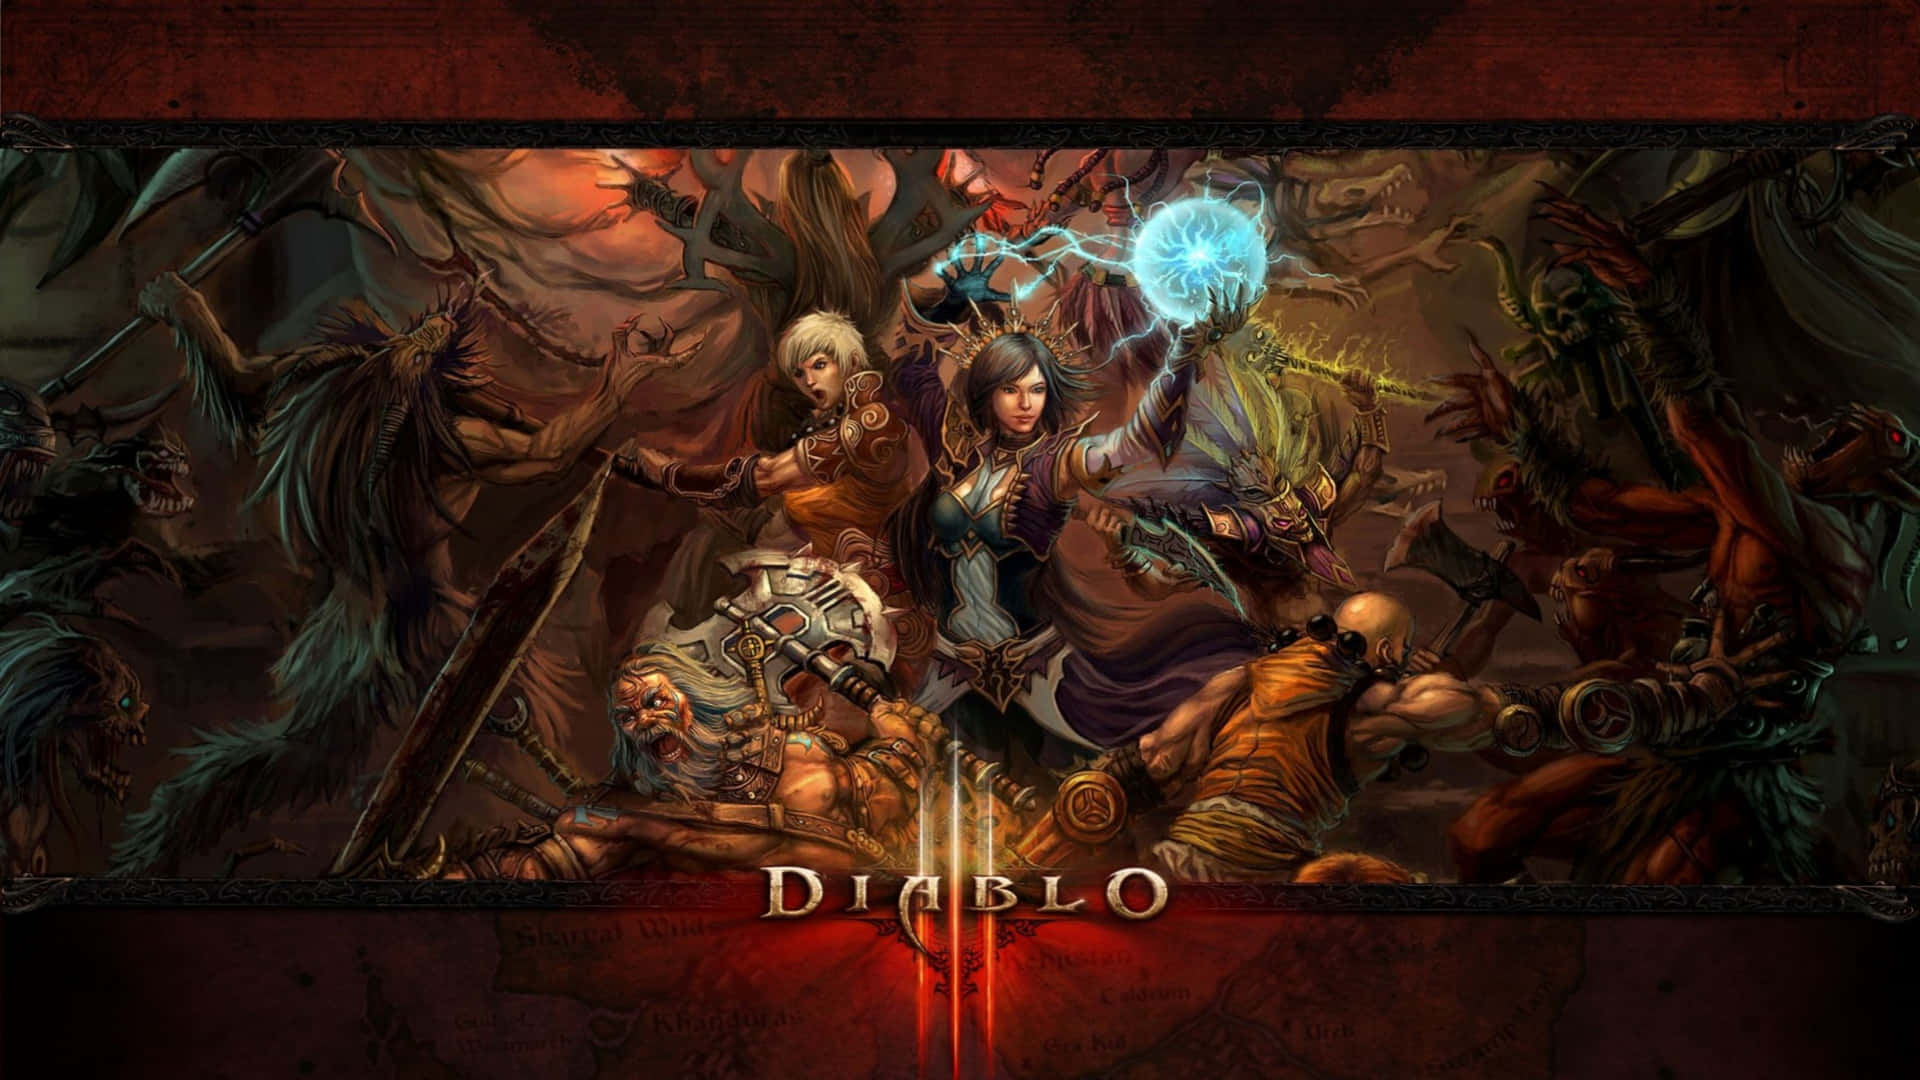 Diablo Main Characters Game Poster 4K Wallpaper